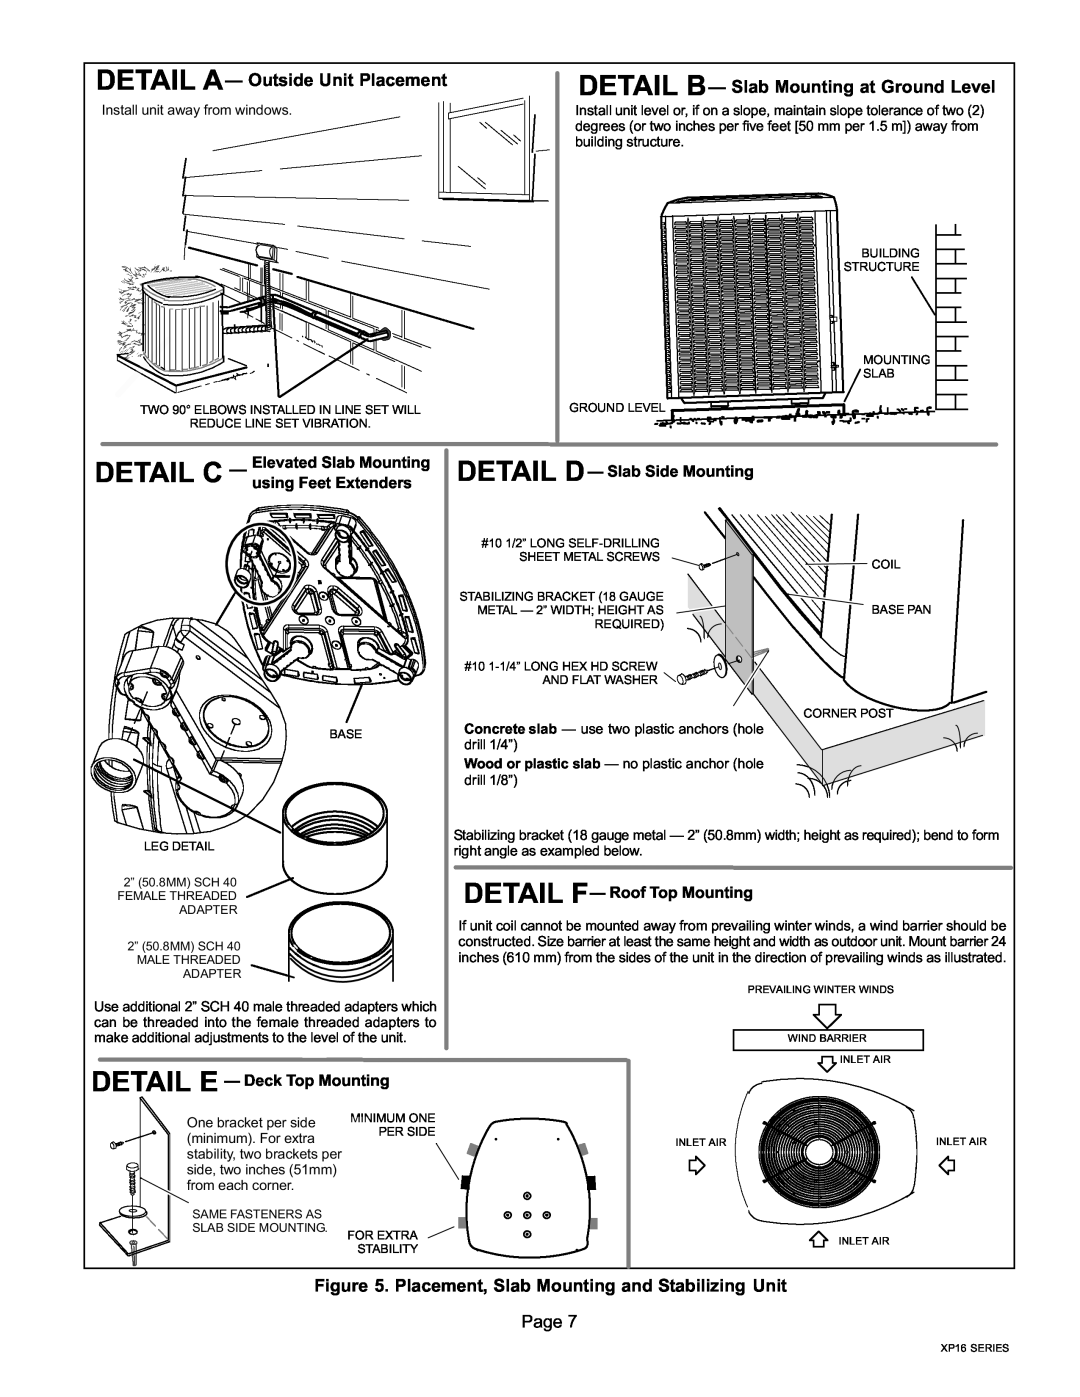 Lenox Elite Series XP16 Units Heat Pumps, P506640-01 Detail B, Detail C, DETAIL A Outside Unit Placement, Page 